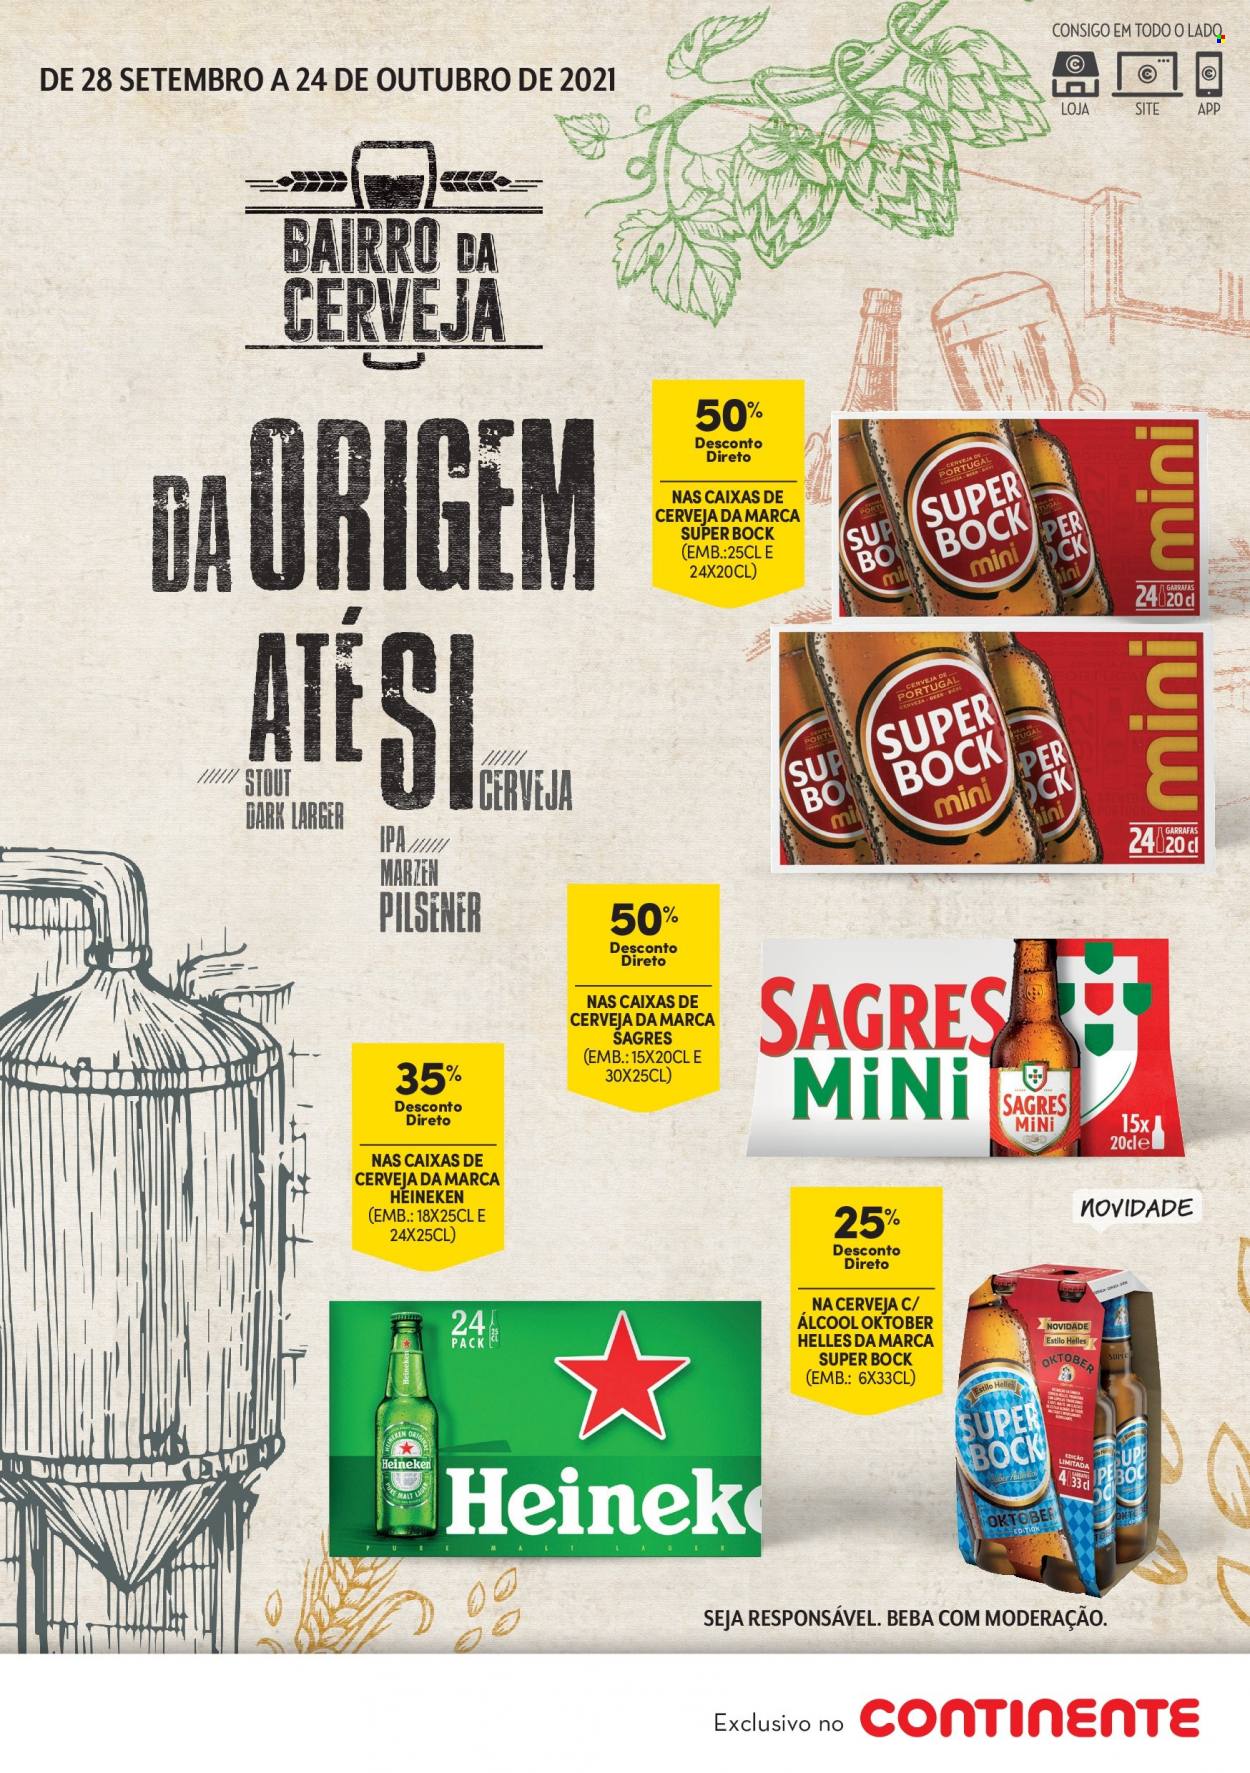 thumbnail - Folheto Continente - 28.9.2021 - 24.10.2021 - Produtos em promoção - Heineken, Sagres, Super Bock, cerveja. Página 1.